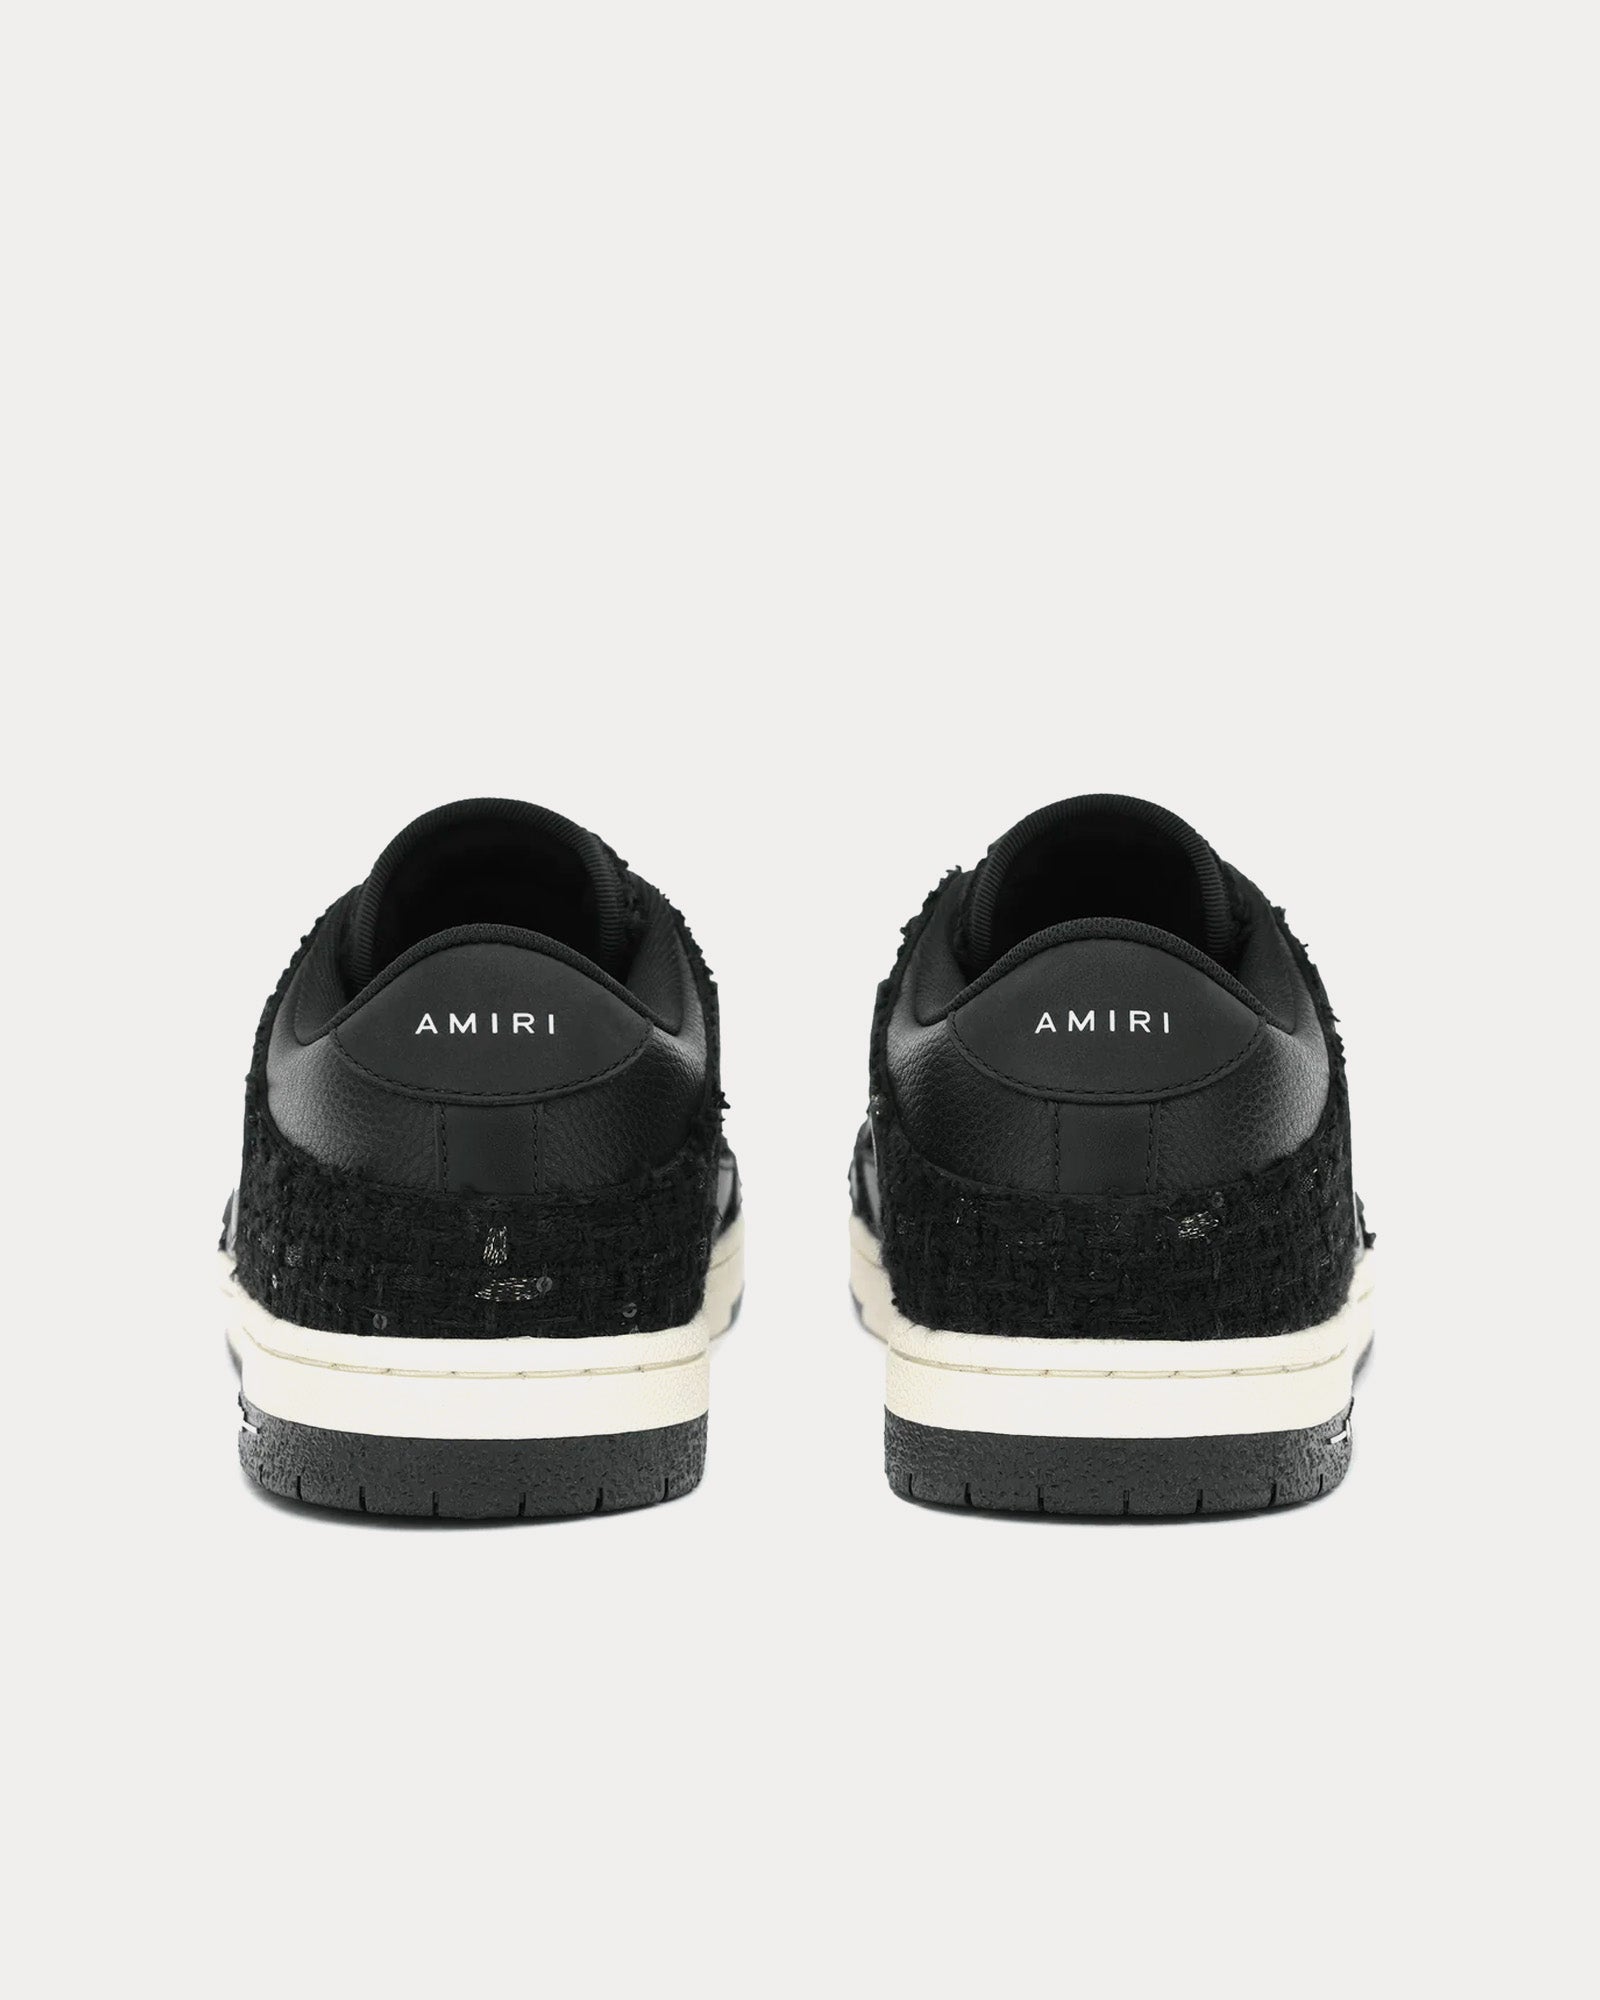 AMIRI - Skel-Top Boucle Black Low Top Sneakers